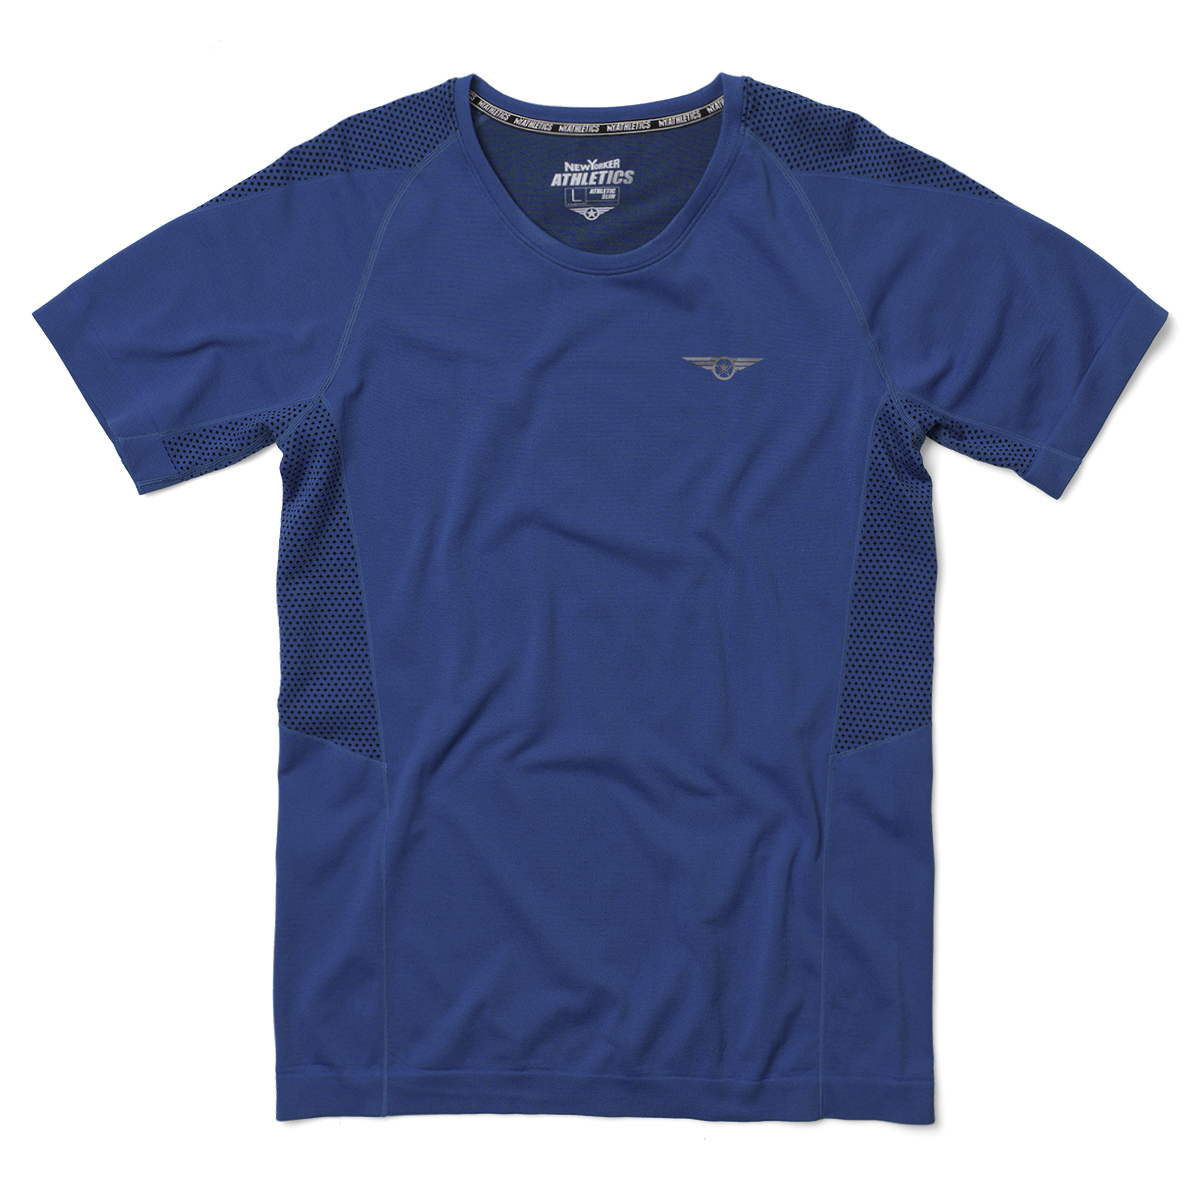 New Yorker Athletics férfi kék T-shirt fotója